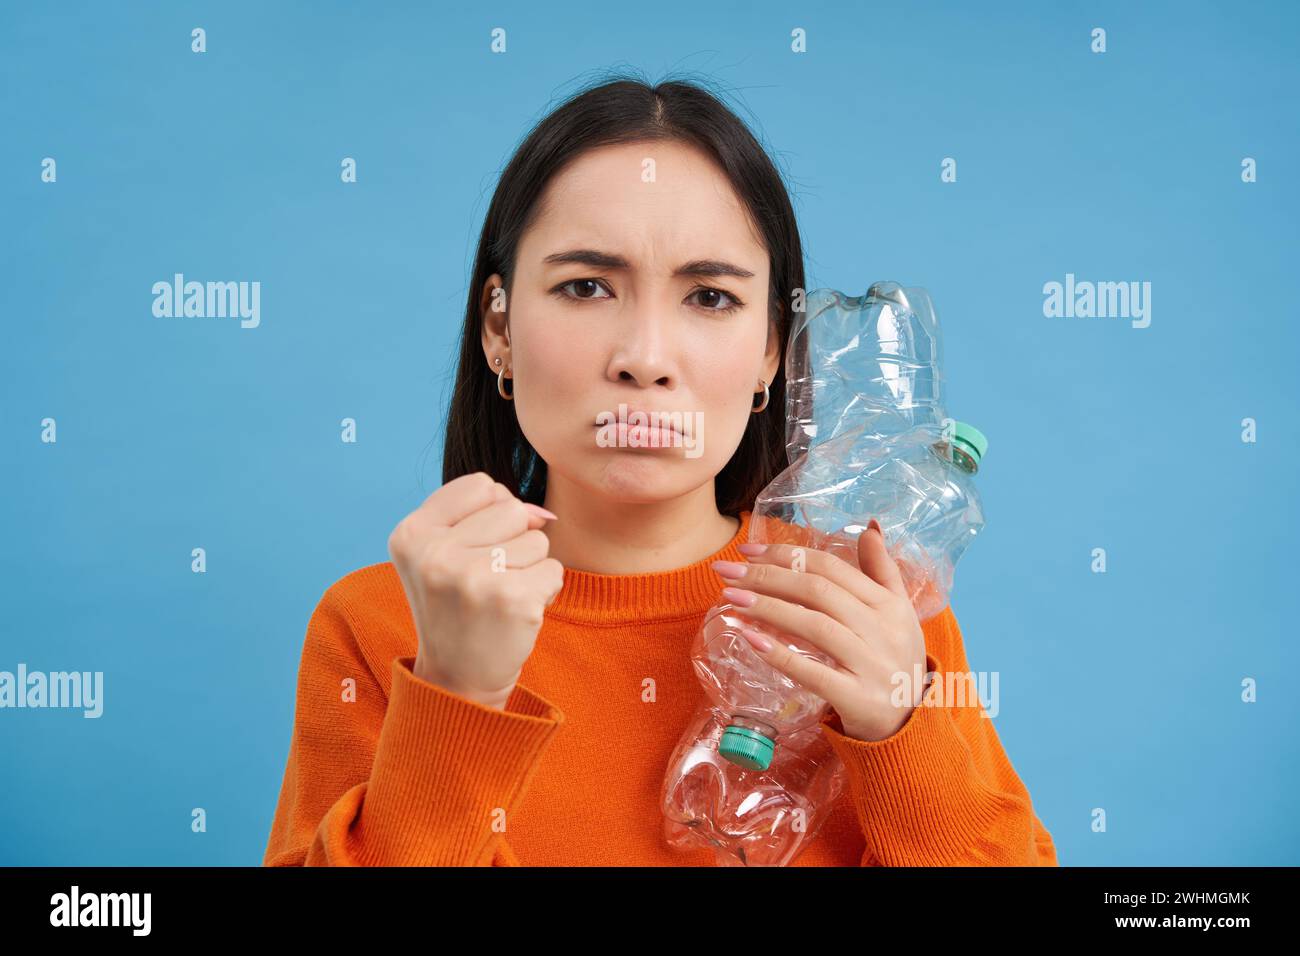 Femme asiatique en colère tenant deux bouteilles en plastique avec le visage froncé, fille avec un style de vie vert éco, exhorte à recycler les déchets, BA bleu Banque D'Images